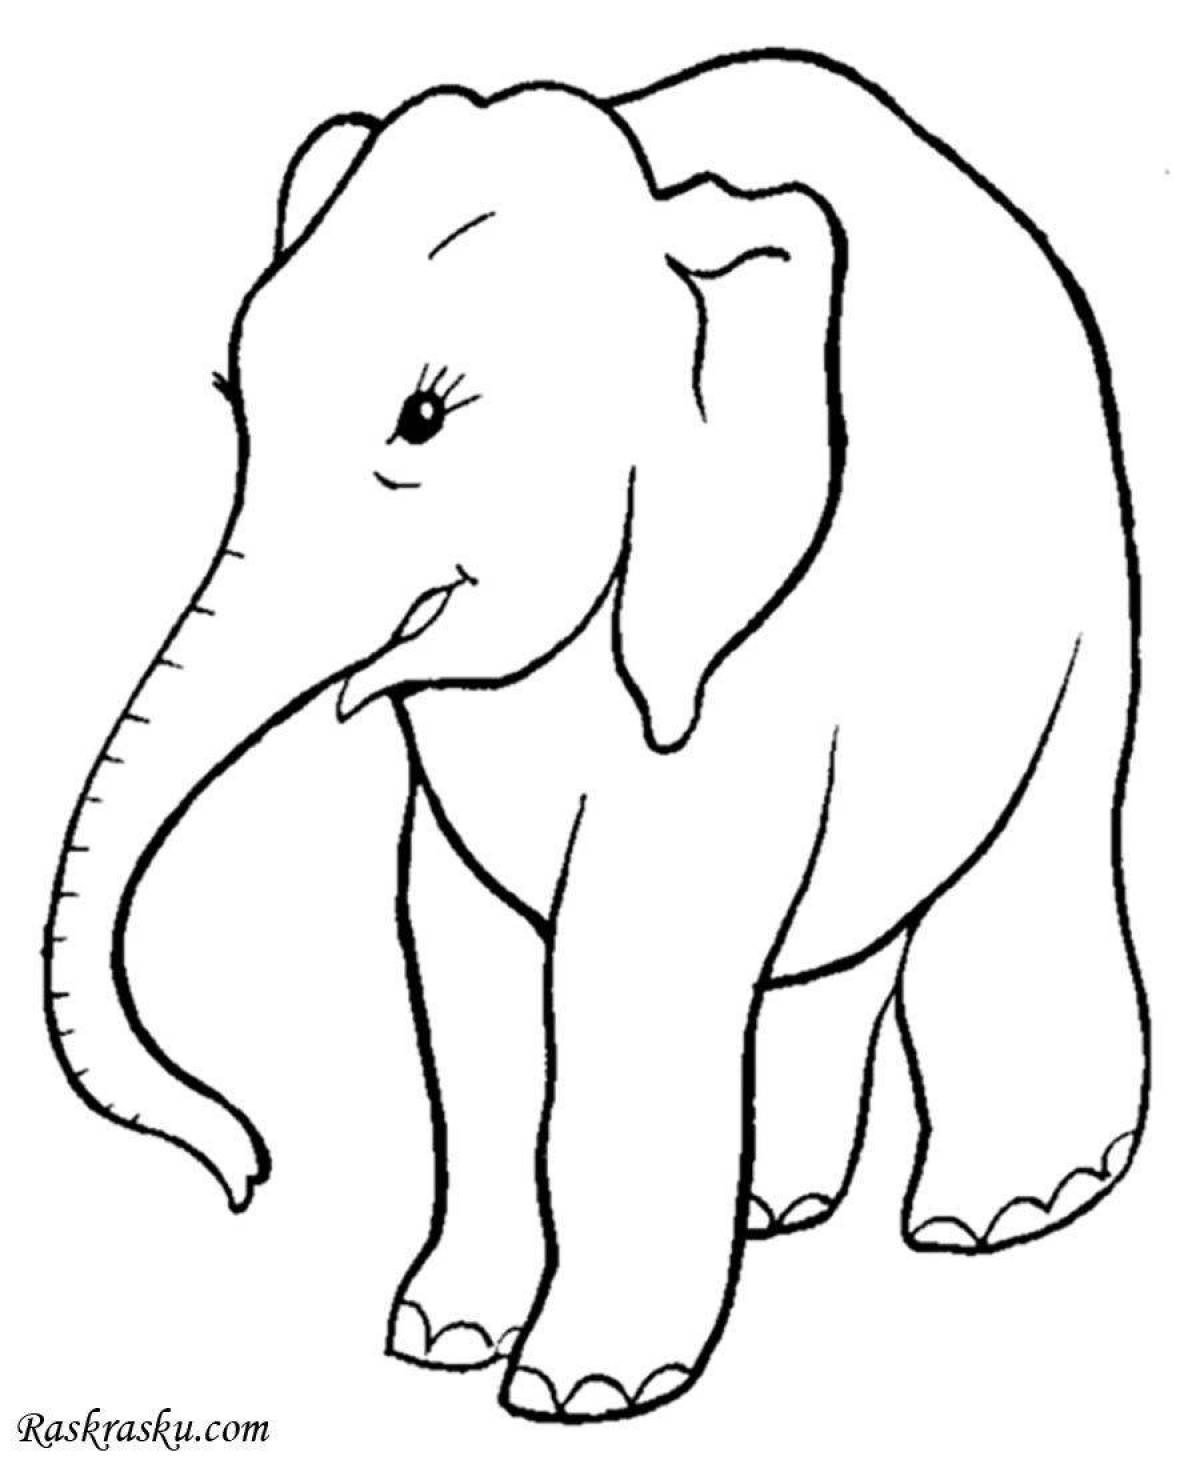 Яркая раскраска с изображением слона